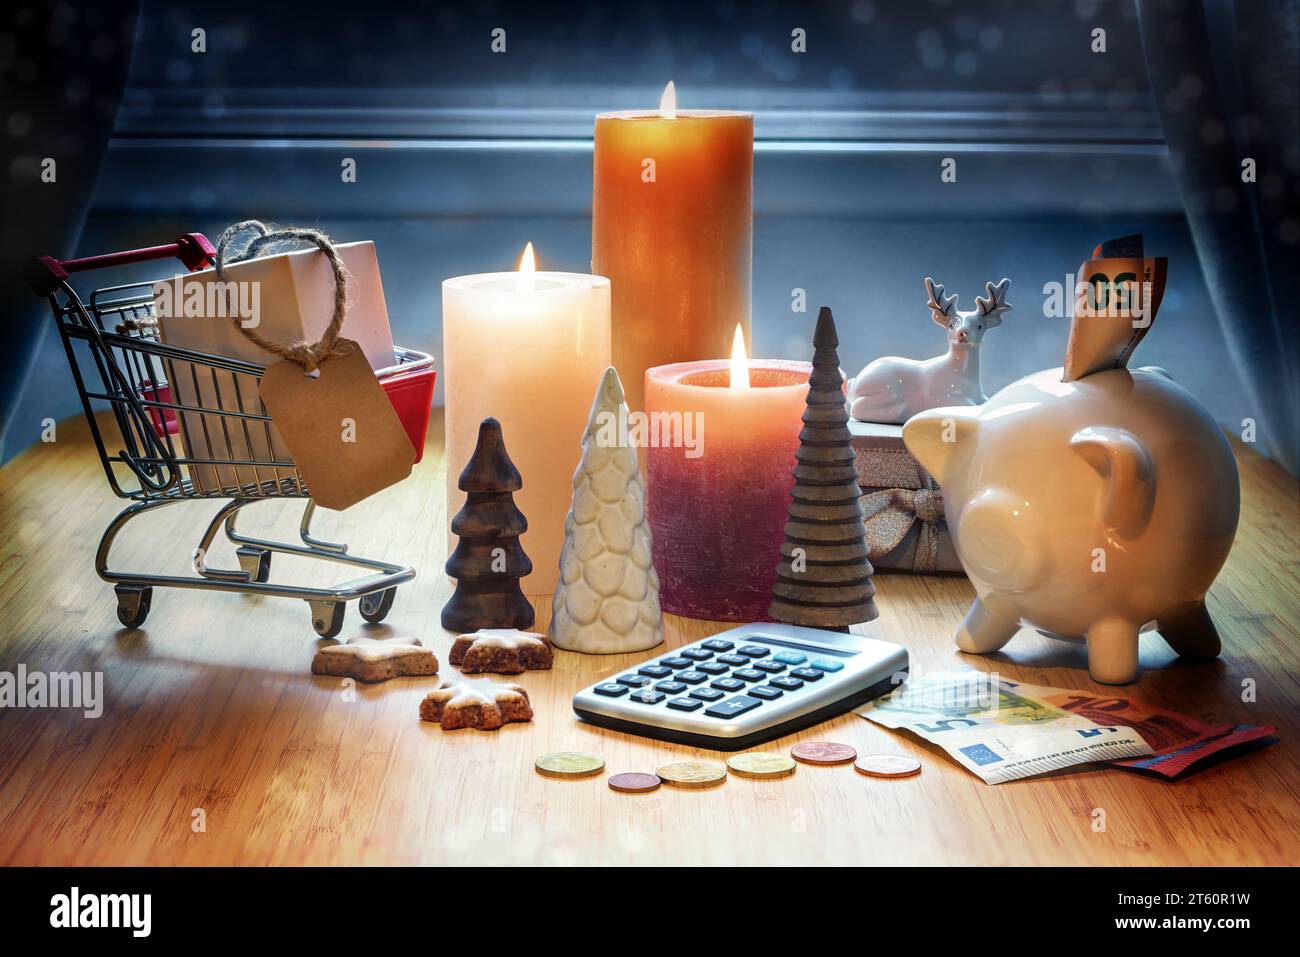 Shopping de vacances. Calculatrice, décoration de Noël, calculatrice, tirelire, panier et bougies sur une table sur fond bleu. Espace de copie Banque D'Images